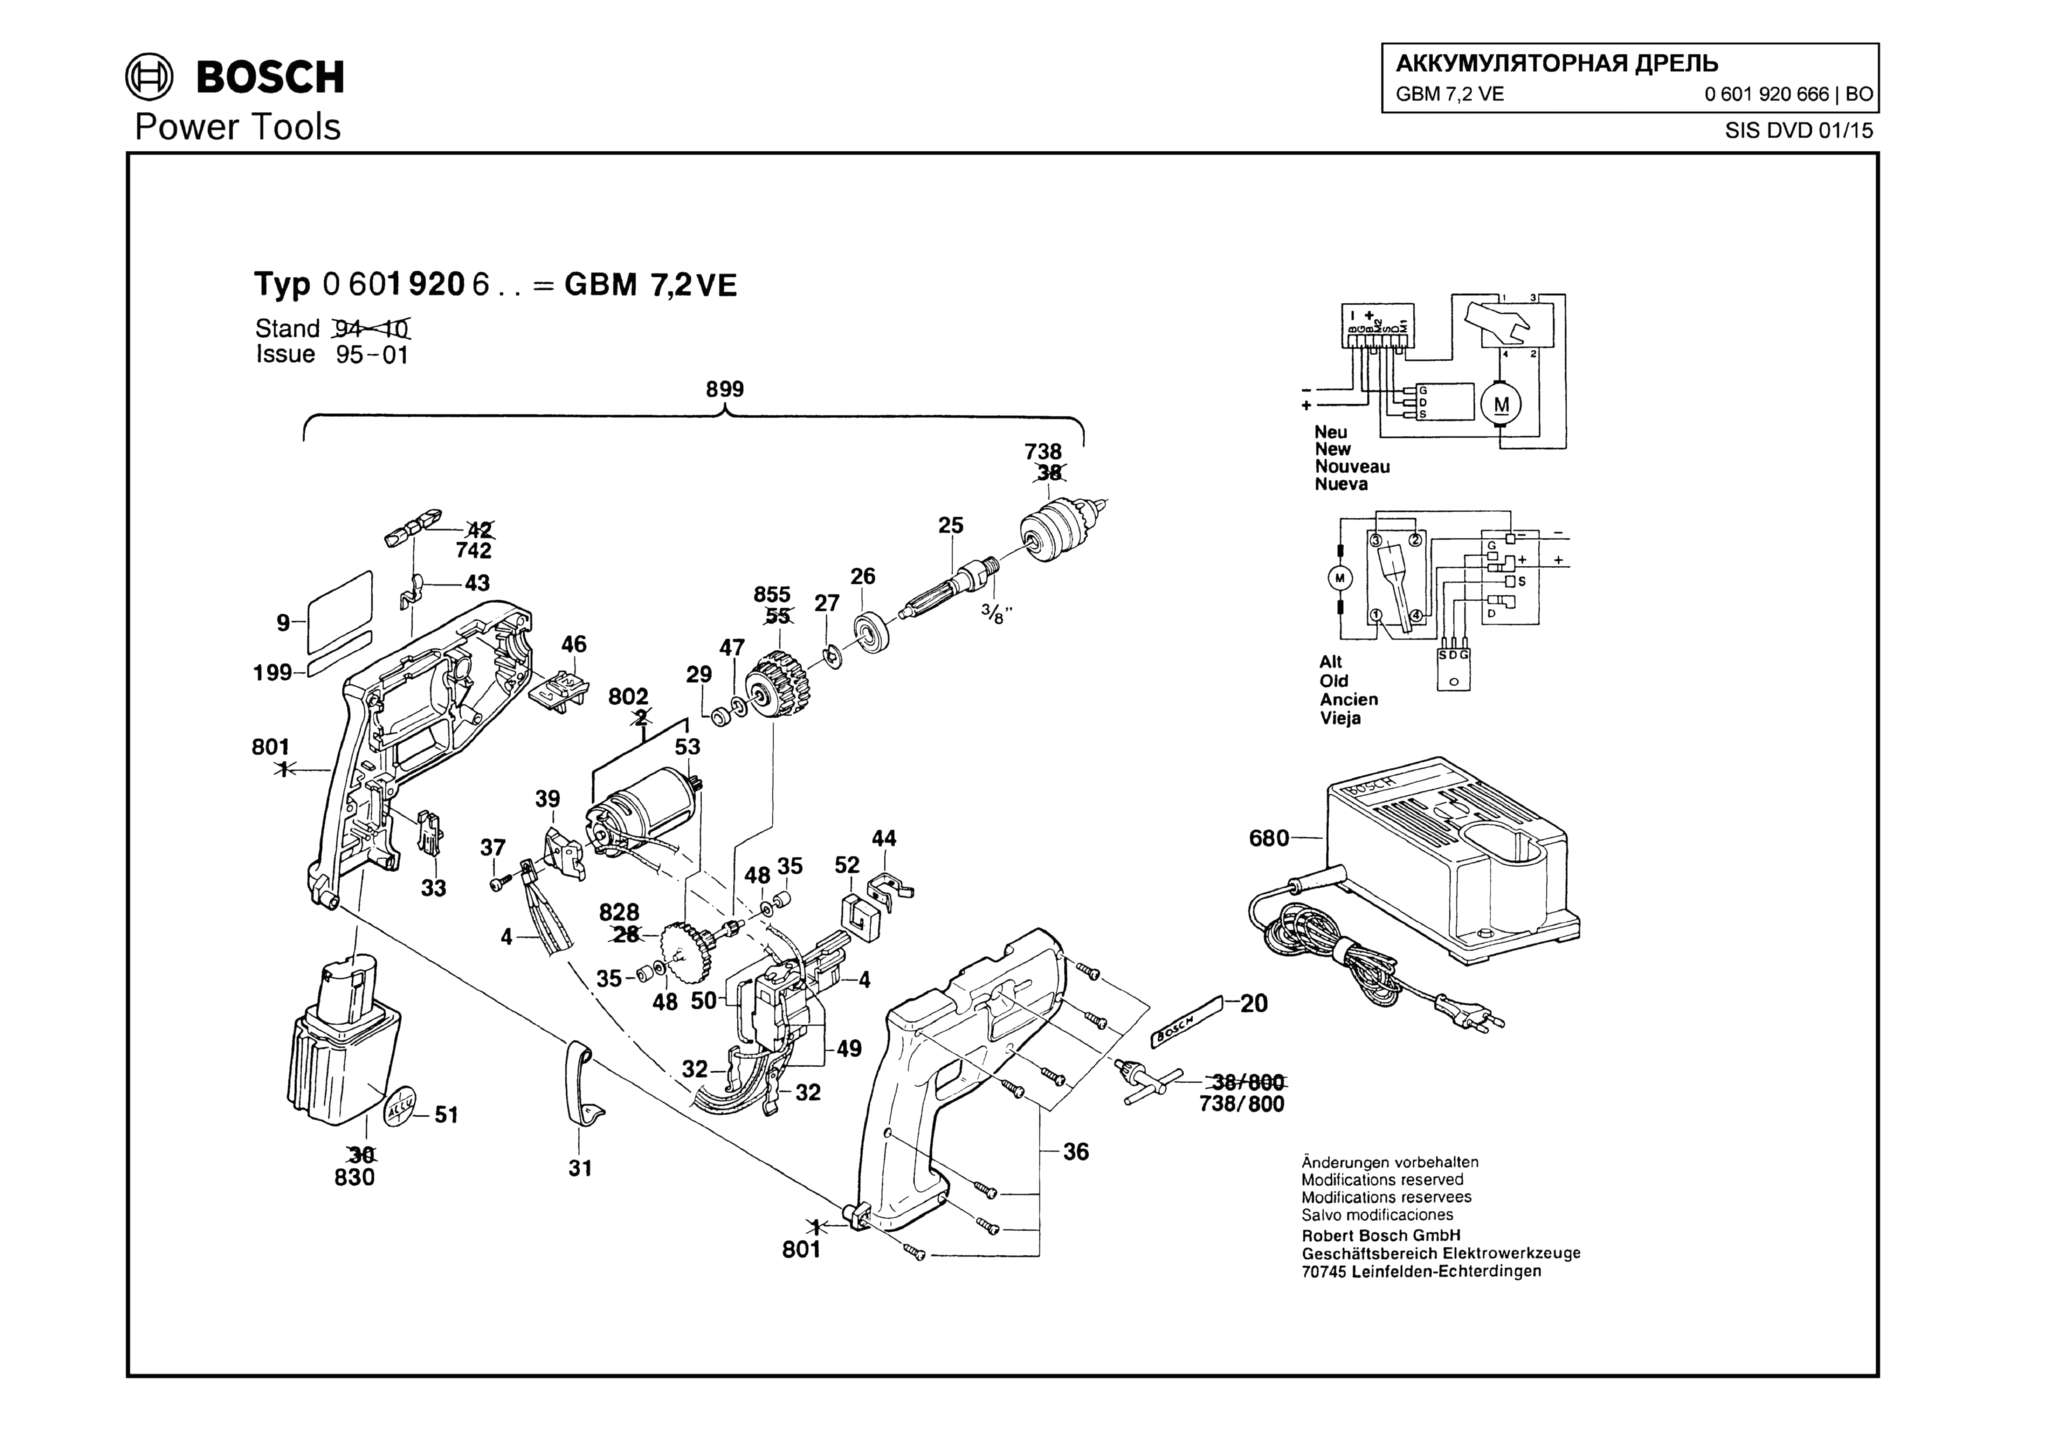 Запчасти, схема и деталировка Bosch GBM 7,2 VE (ТИП 0601920666)